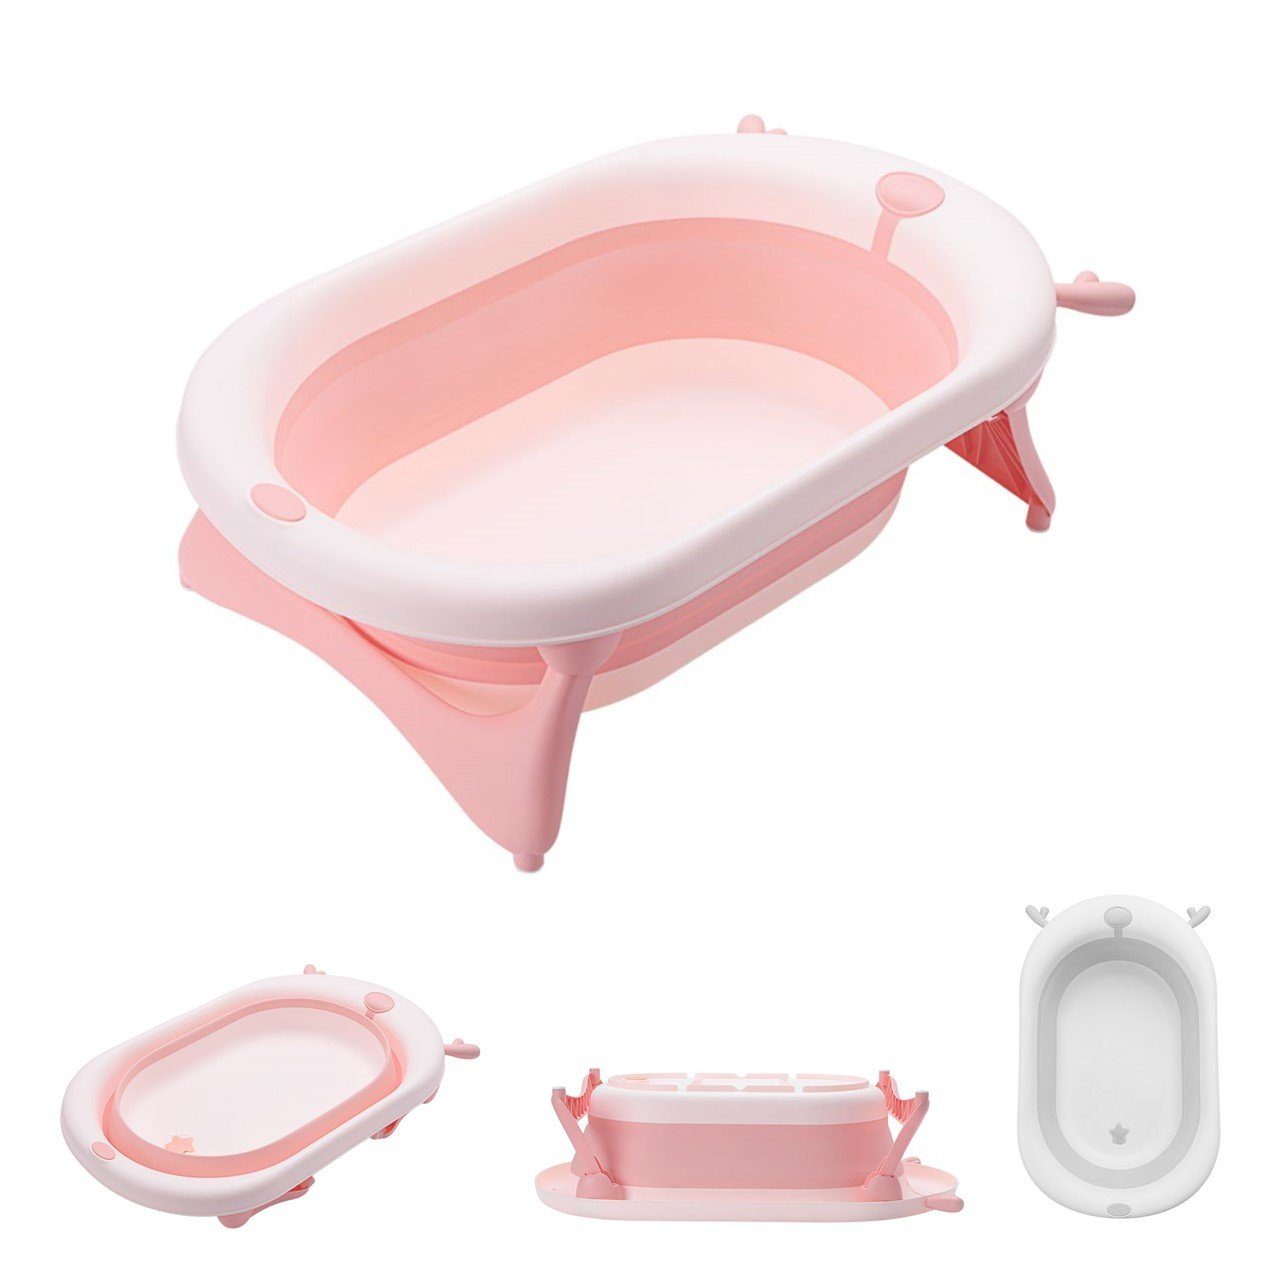 [Zuerst vertrauen] Kikkaboo Babybadewanne faltbare Babybadewanne leicht reinigen, pink ab zu Wasserablauf, Geburt Foldy